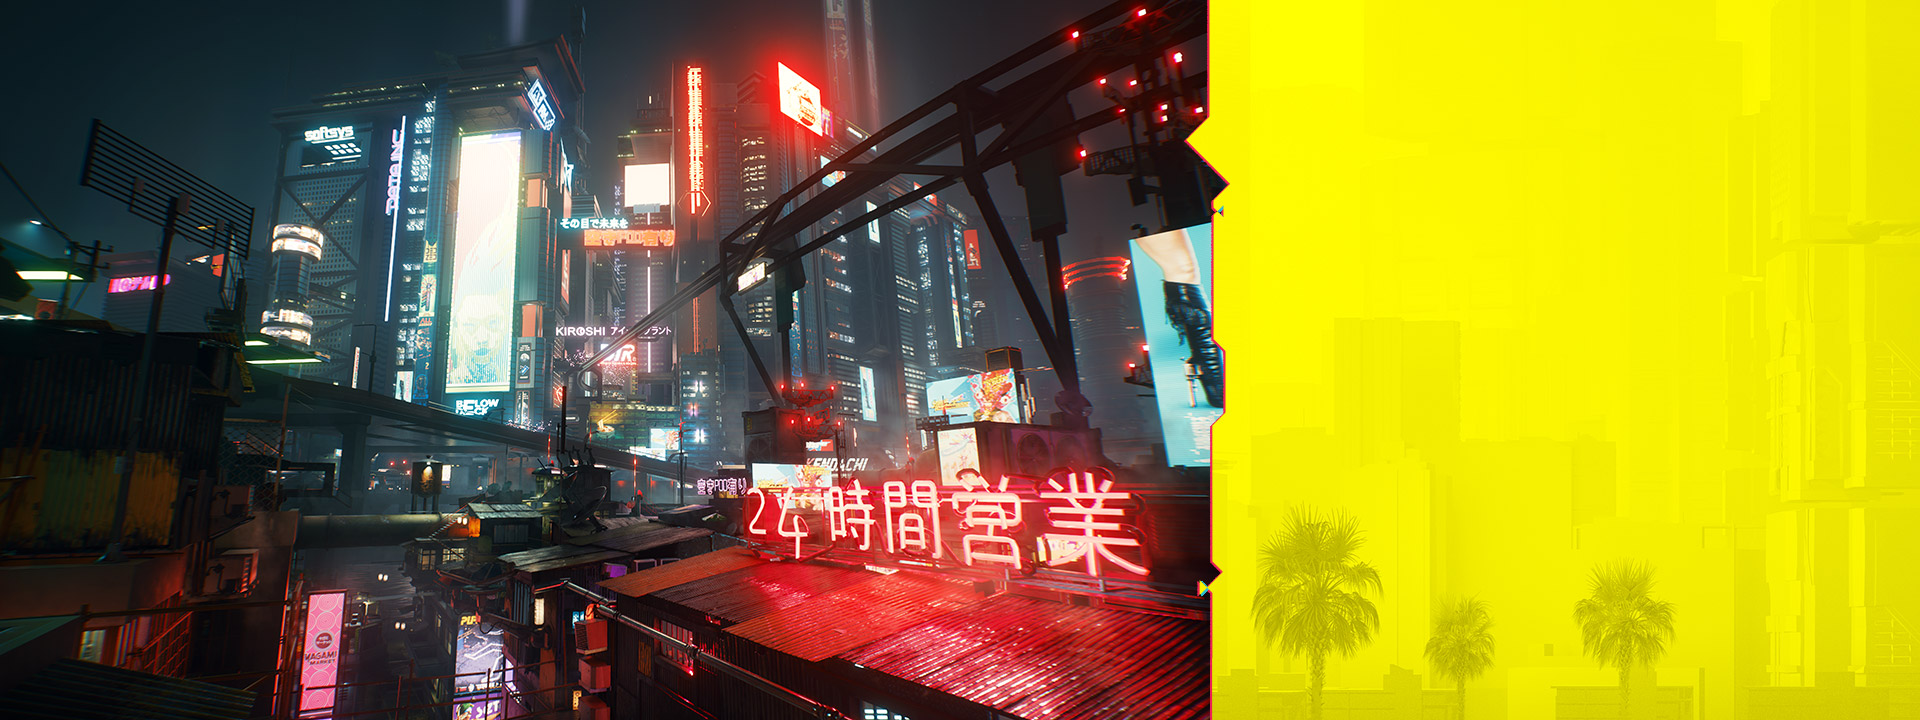 Neonskilte i Night City lyser mod et diset bybillede om natten.